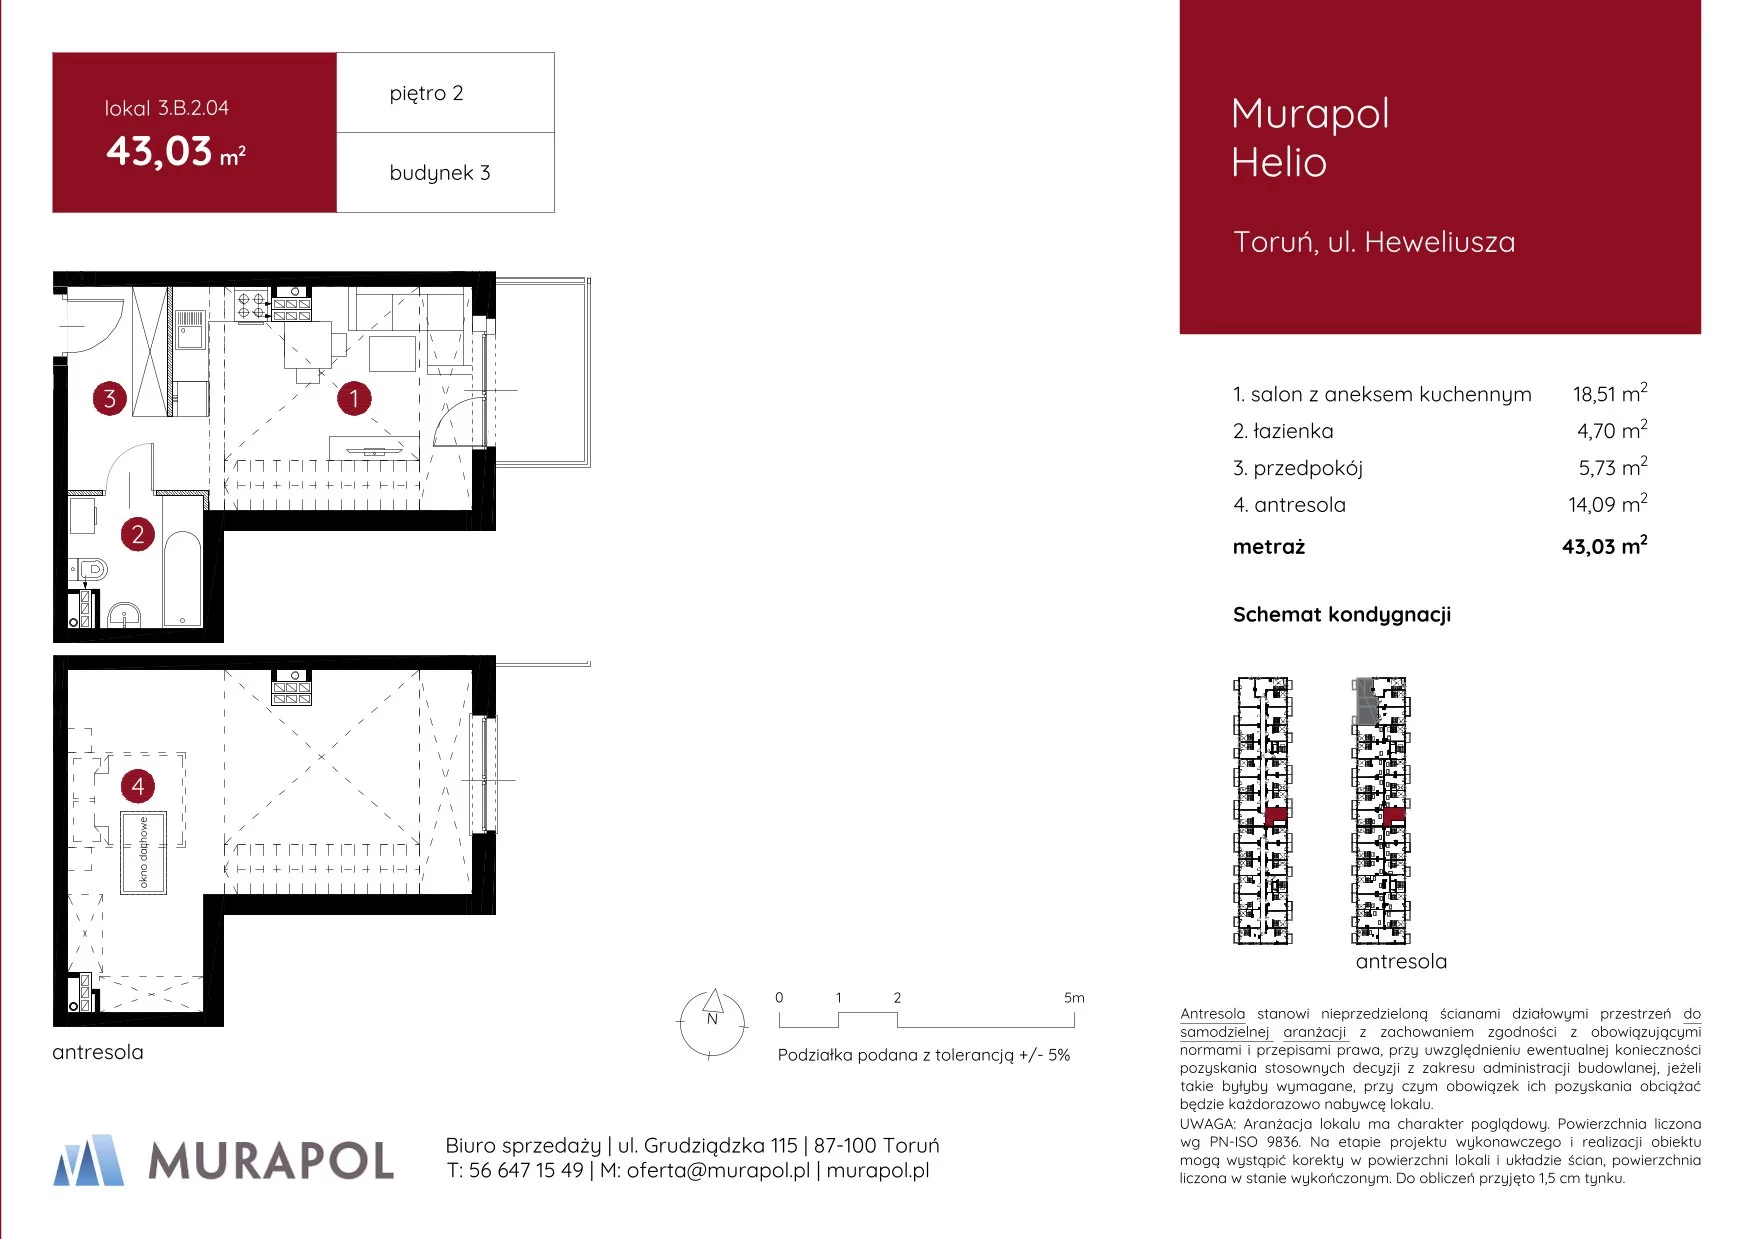 Mieszkanie 43,03 m², piętro 2, oferta nr 3.B.2.04, Murapol Helio, Toruń, Wrzosy, JAR, ul. Heweliusza